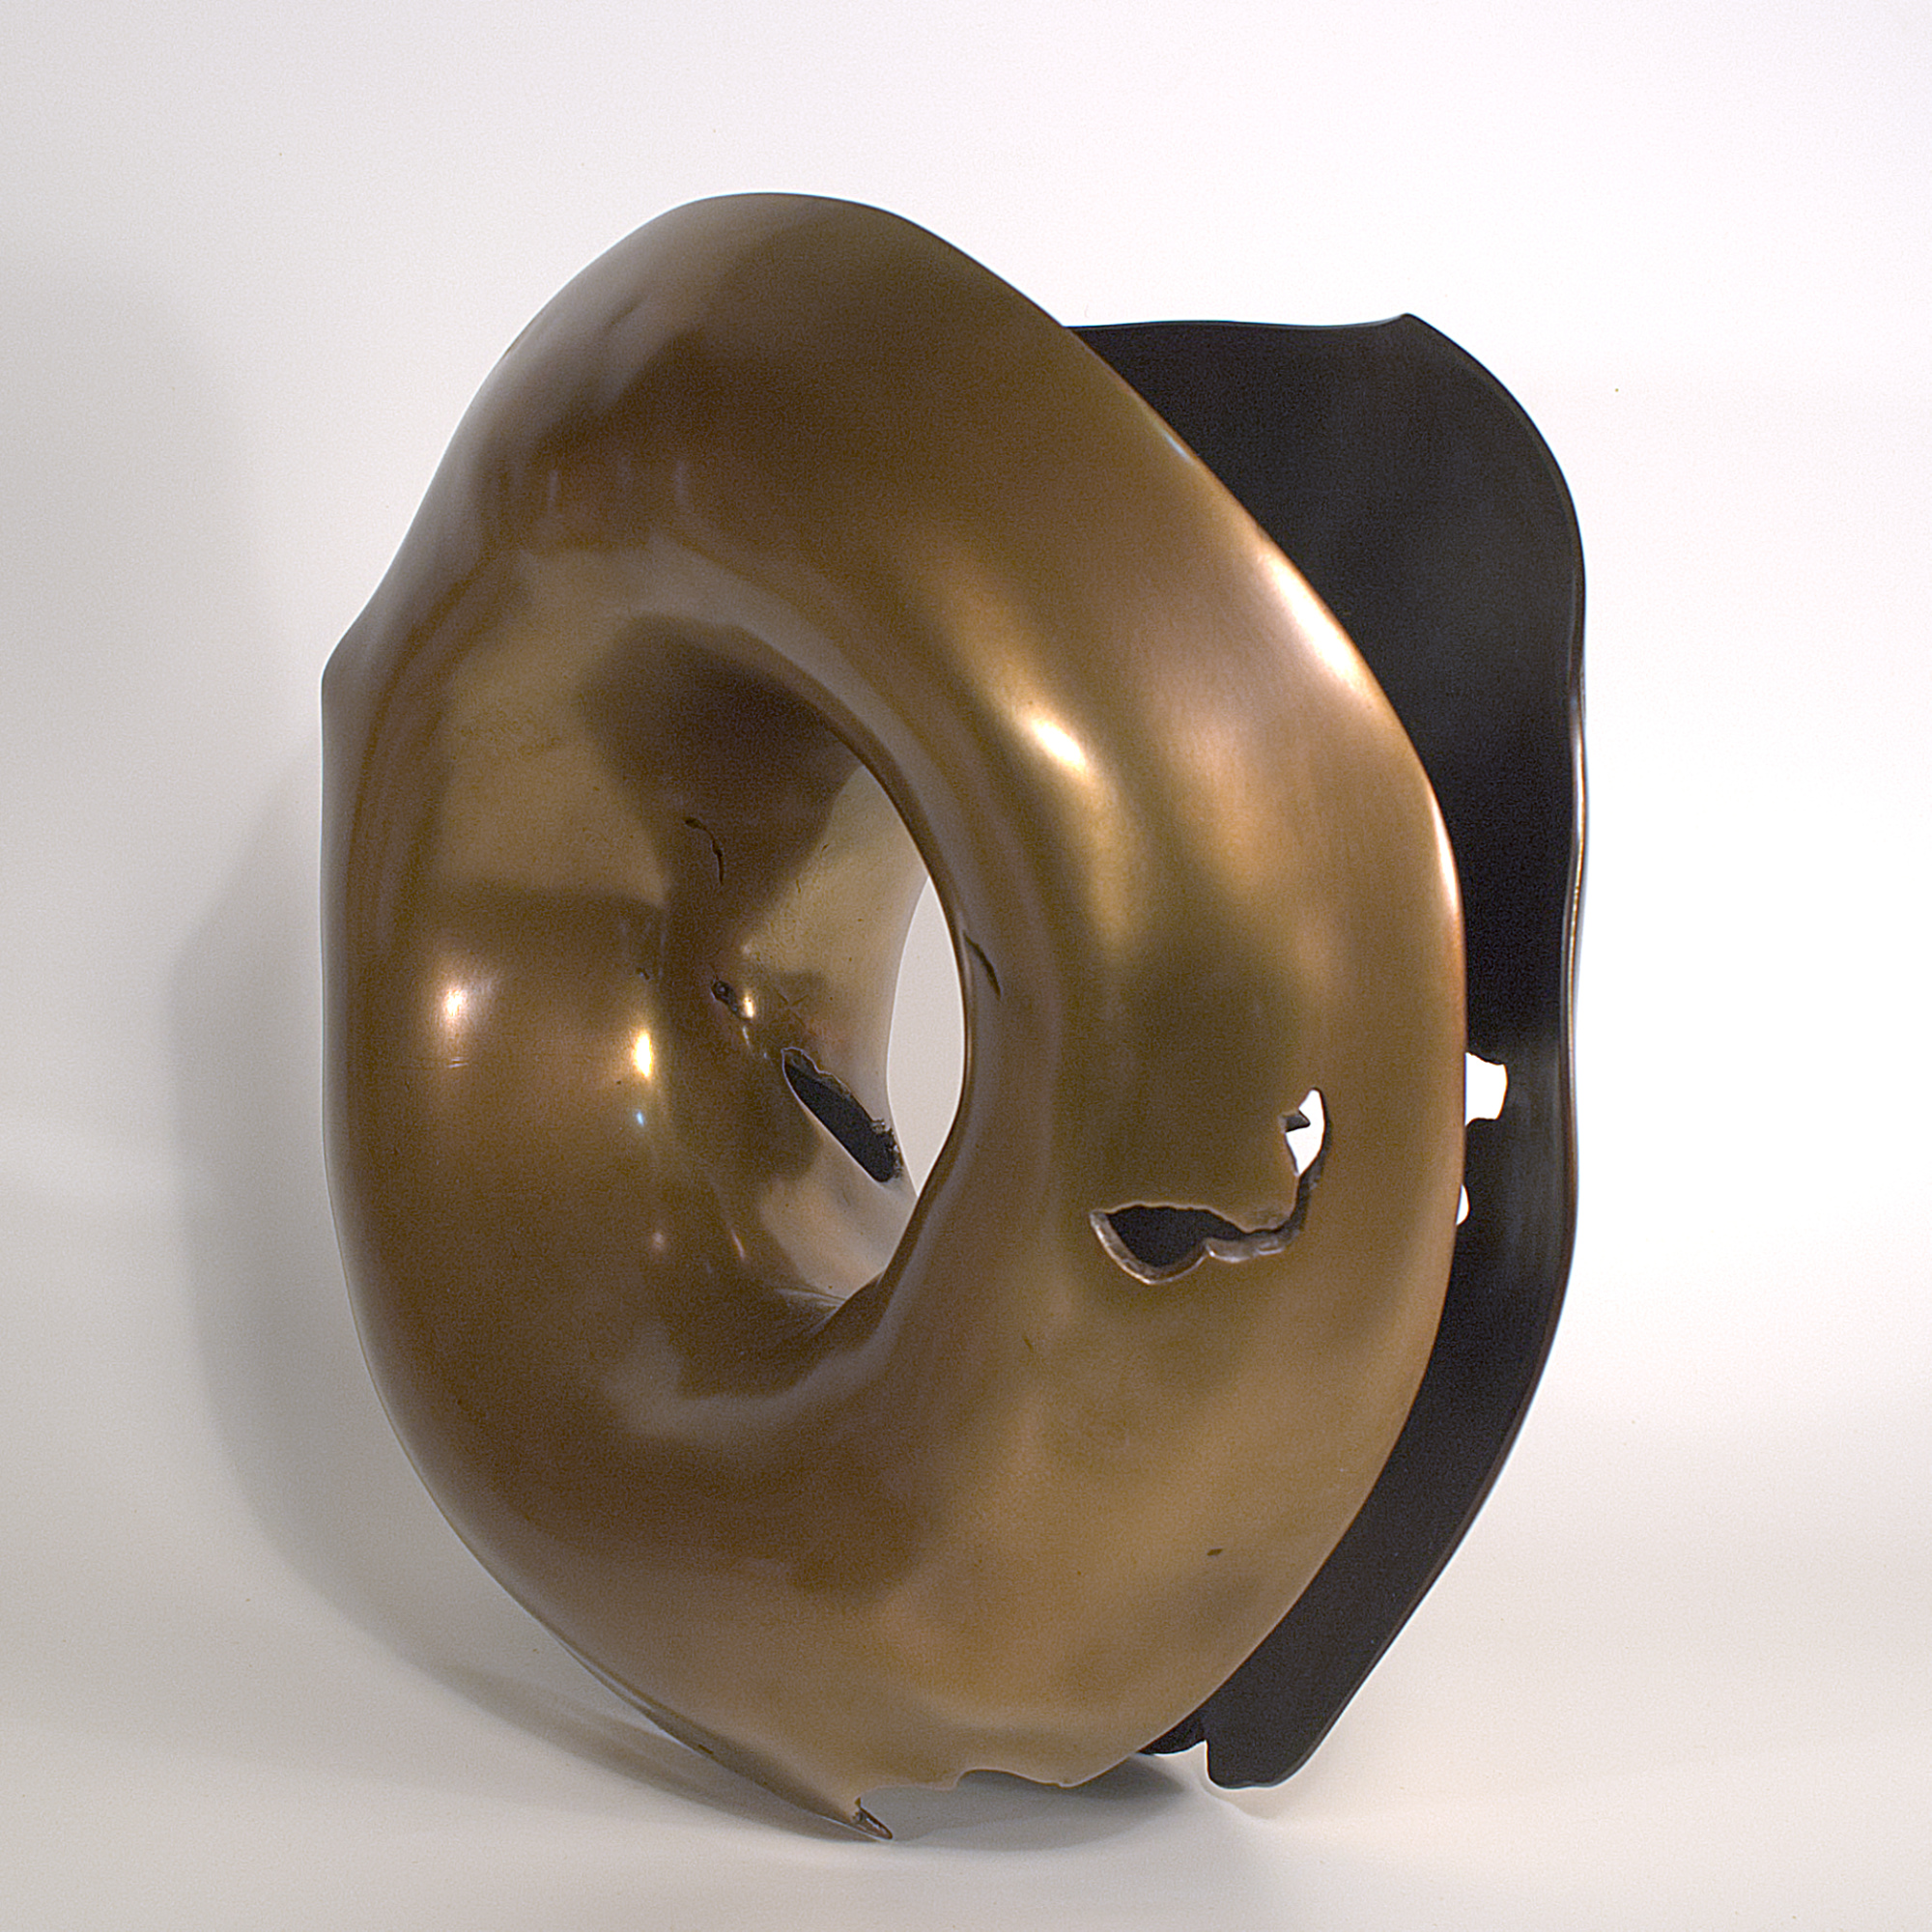 Annular form #2. Modern bronze sculpture by Steve Howlett. 2013